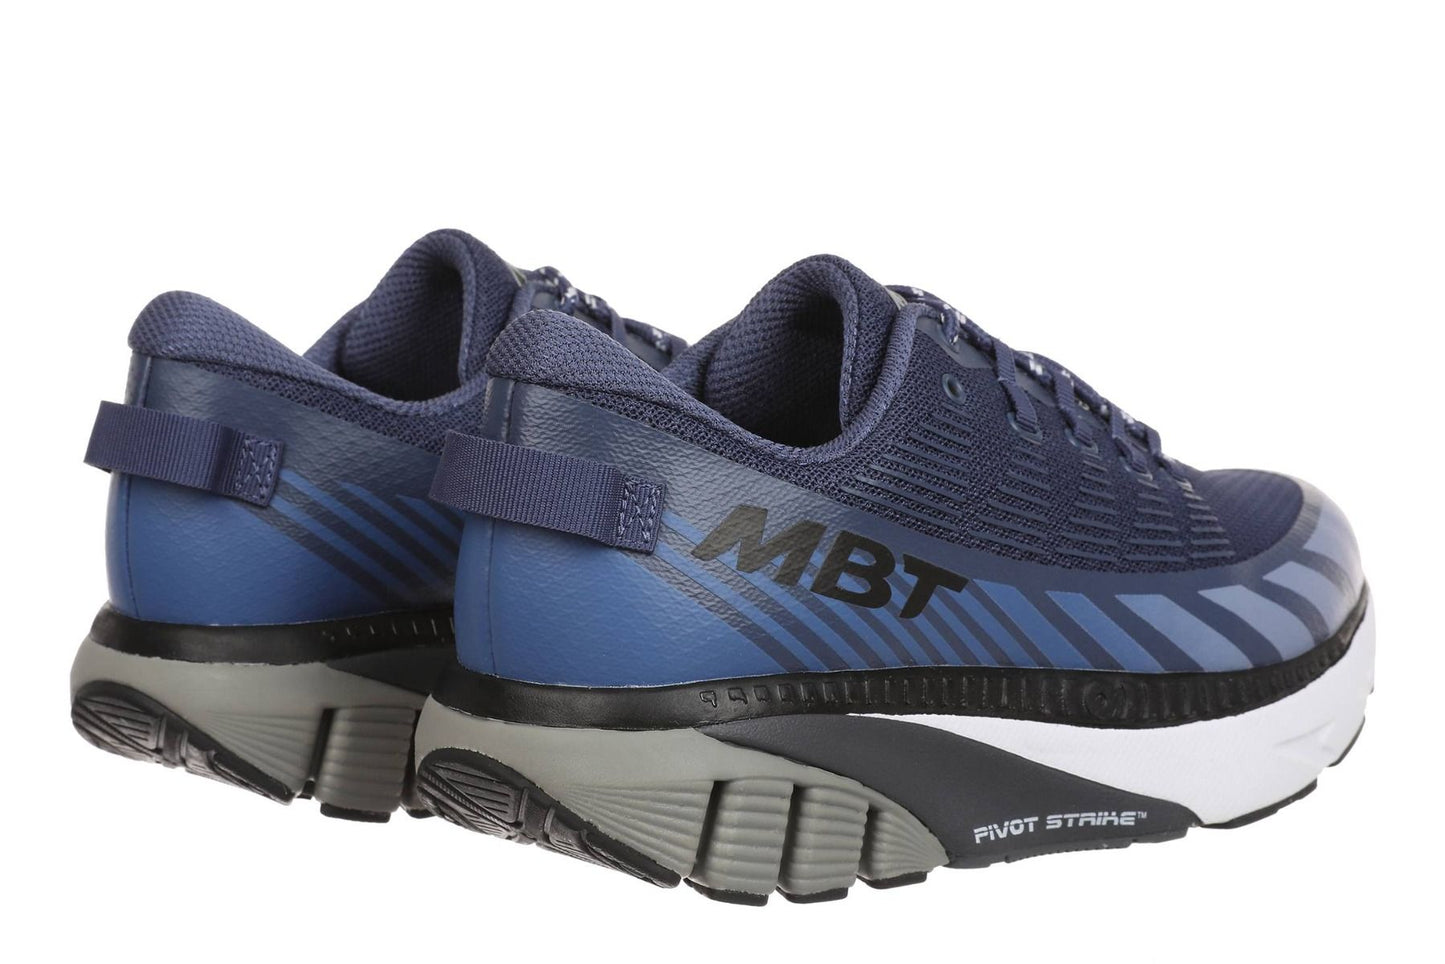 MBT MTR-1500 trainer scarpe da corsa da uomo